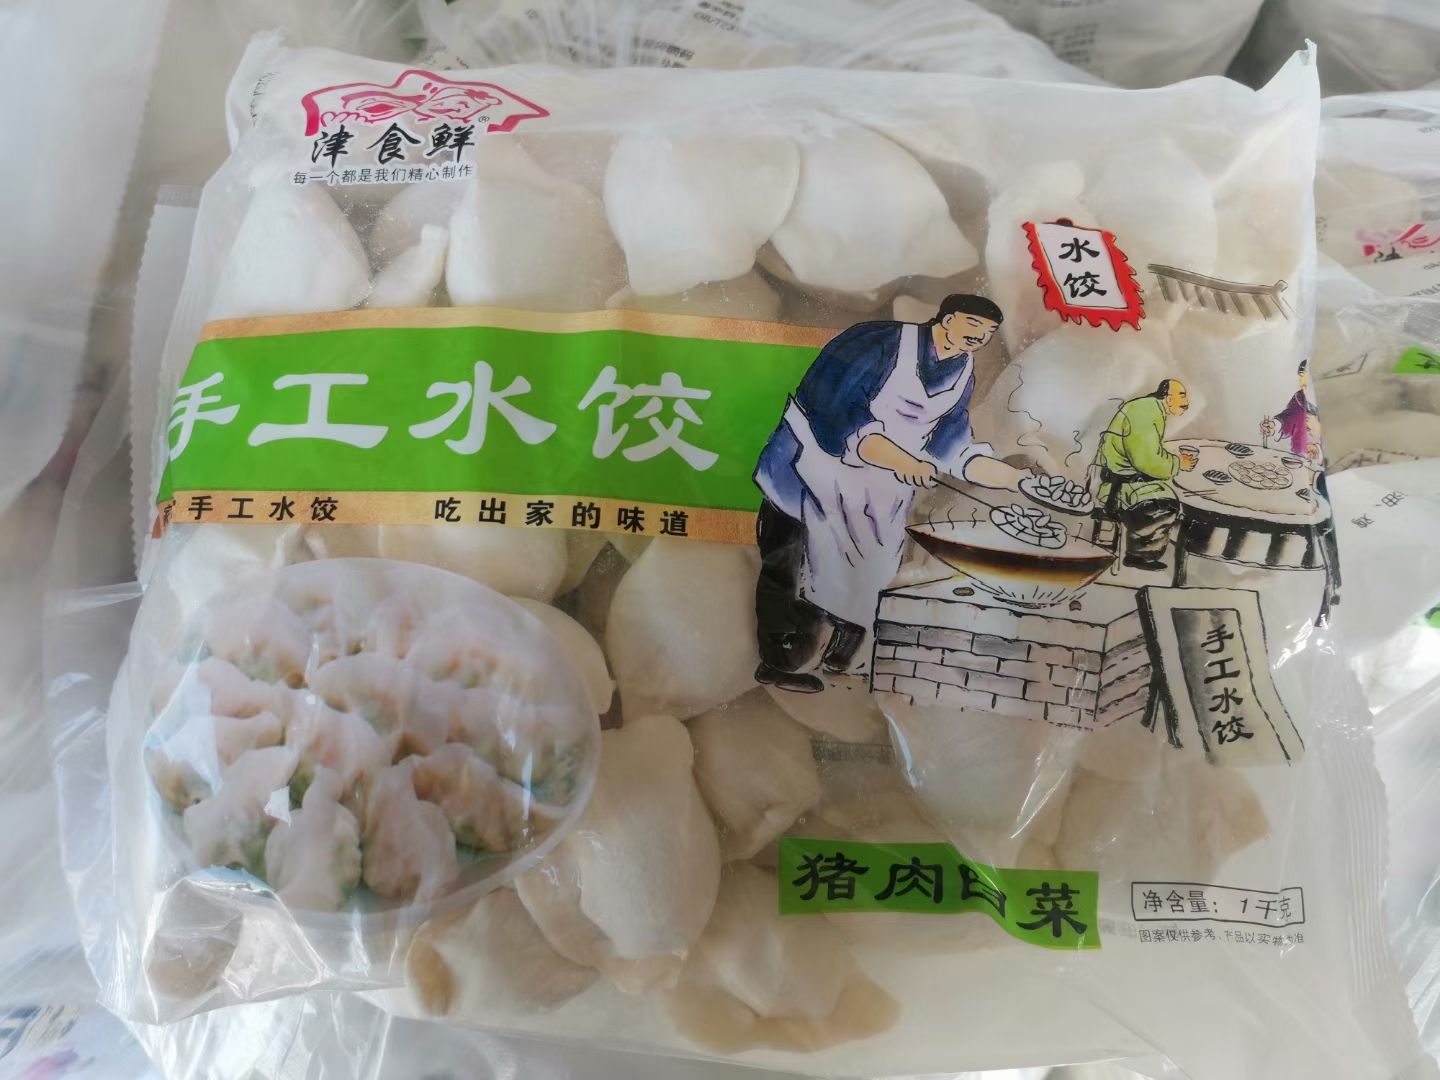 [饺子批发]饺子 手工水饺价格85元/箱 